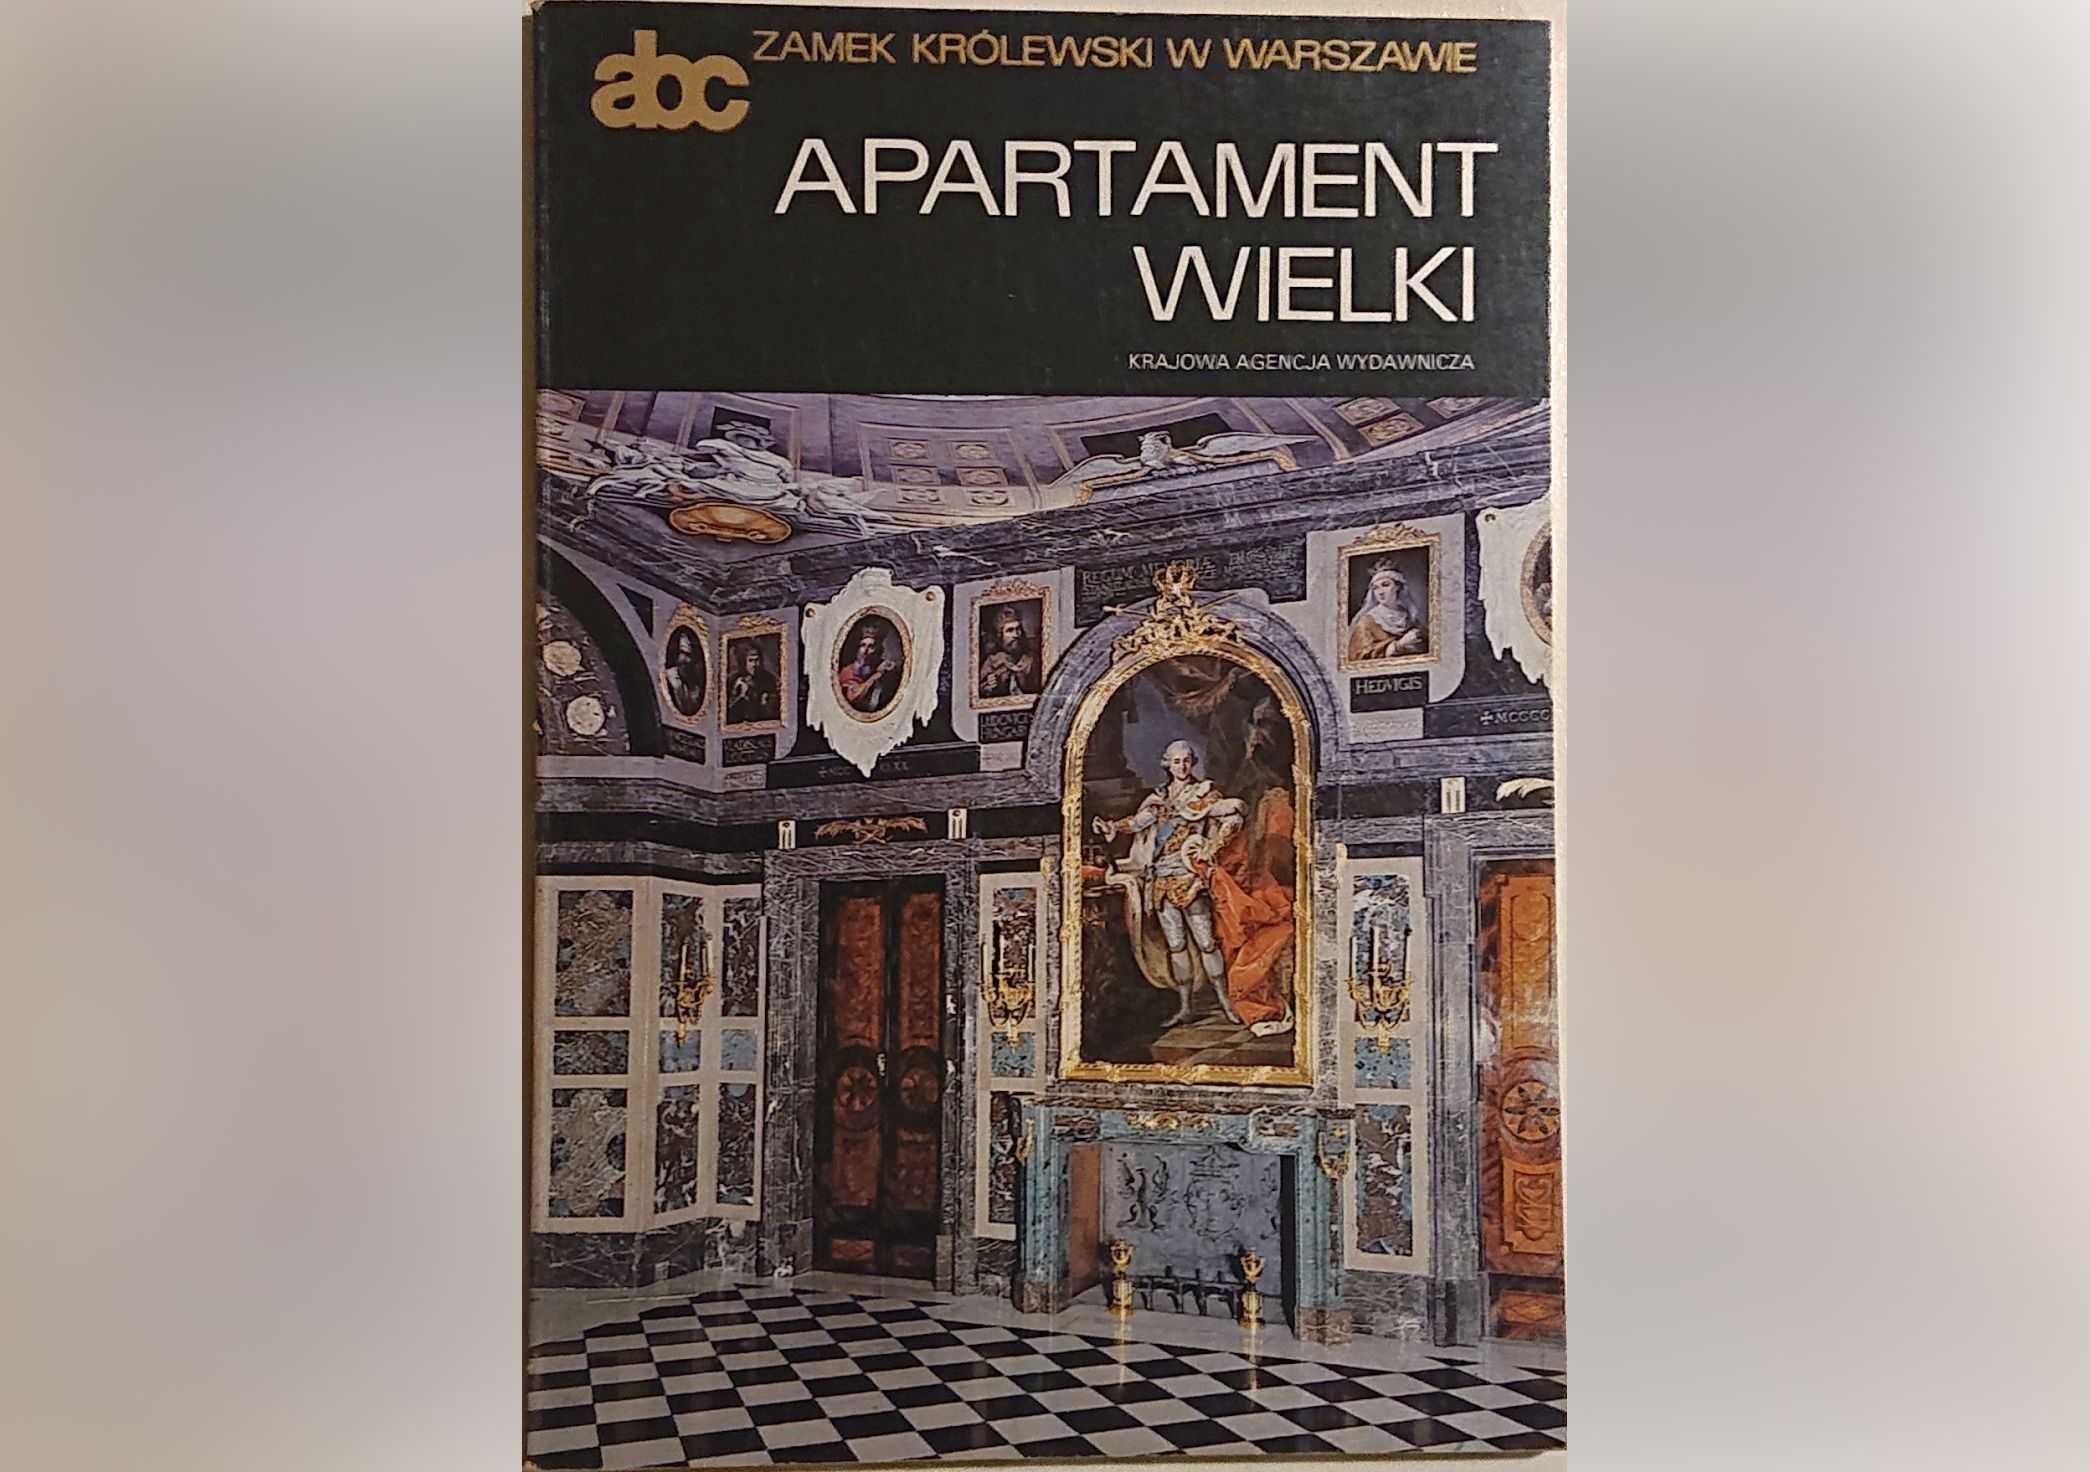 "Apartament wielki" - KAW seria "abc" - lata 80-te